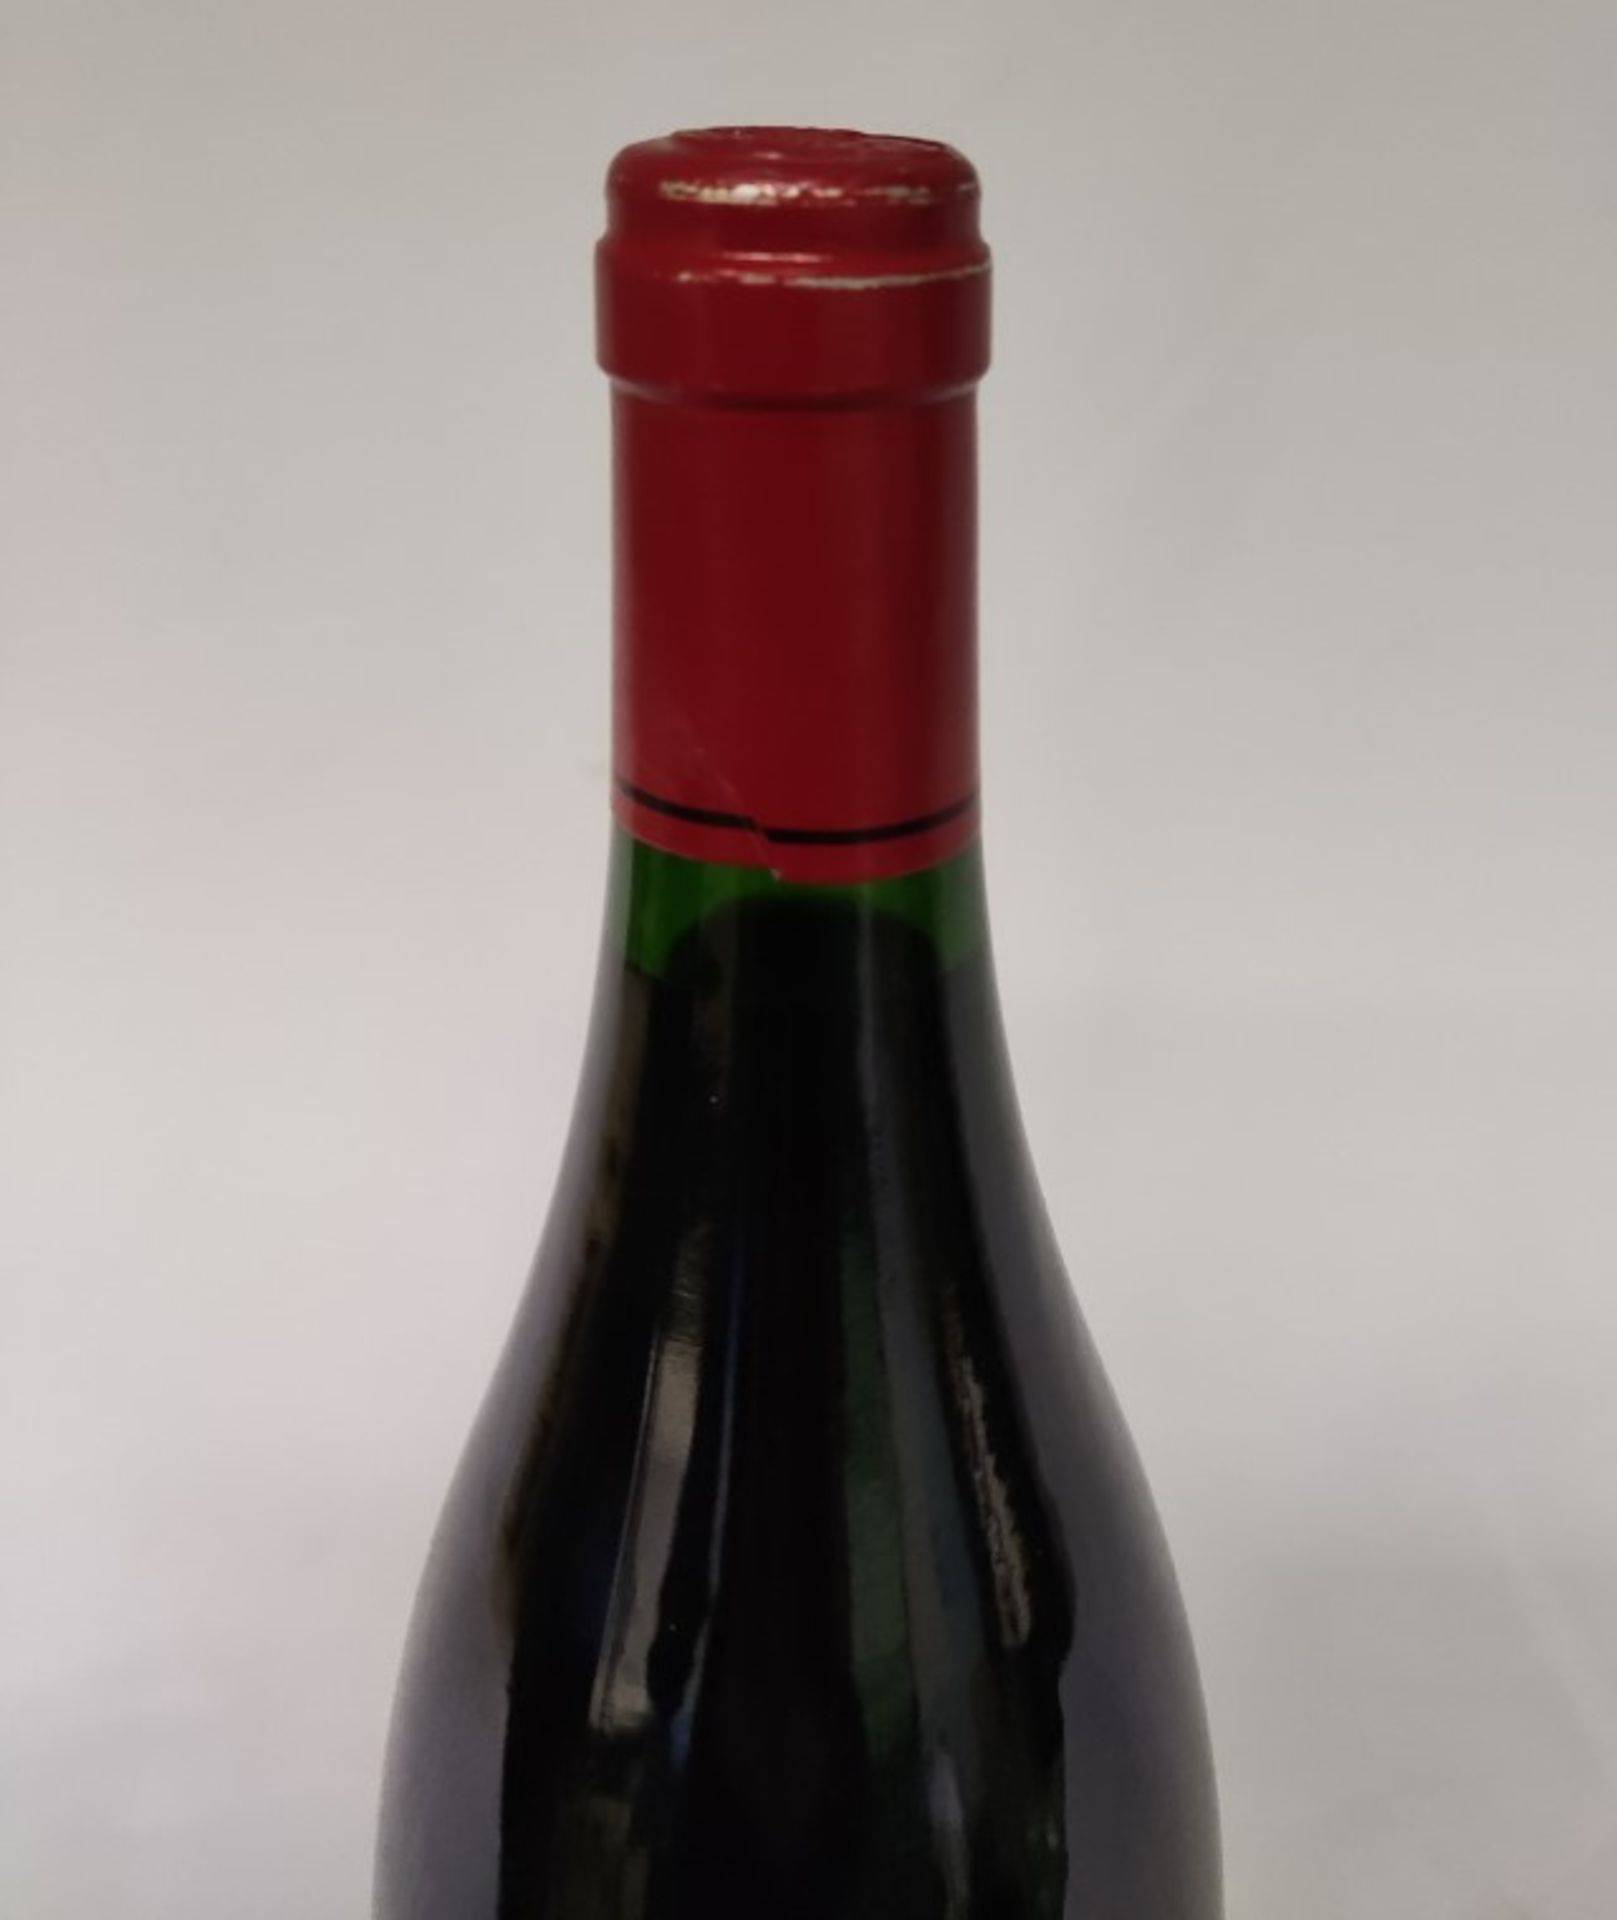 1 x Bottle of 2011 Domaine De La Grange Des Peres Red Wine - RRP £350 - Image 5 of 7